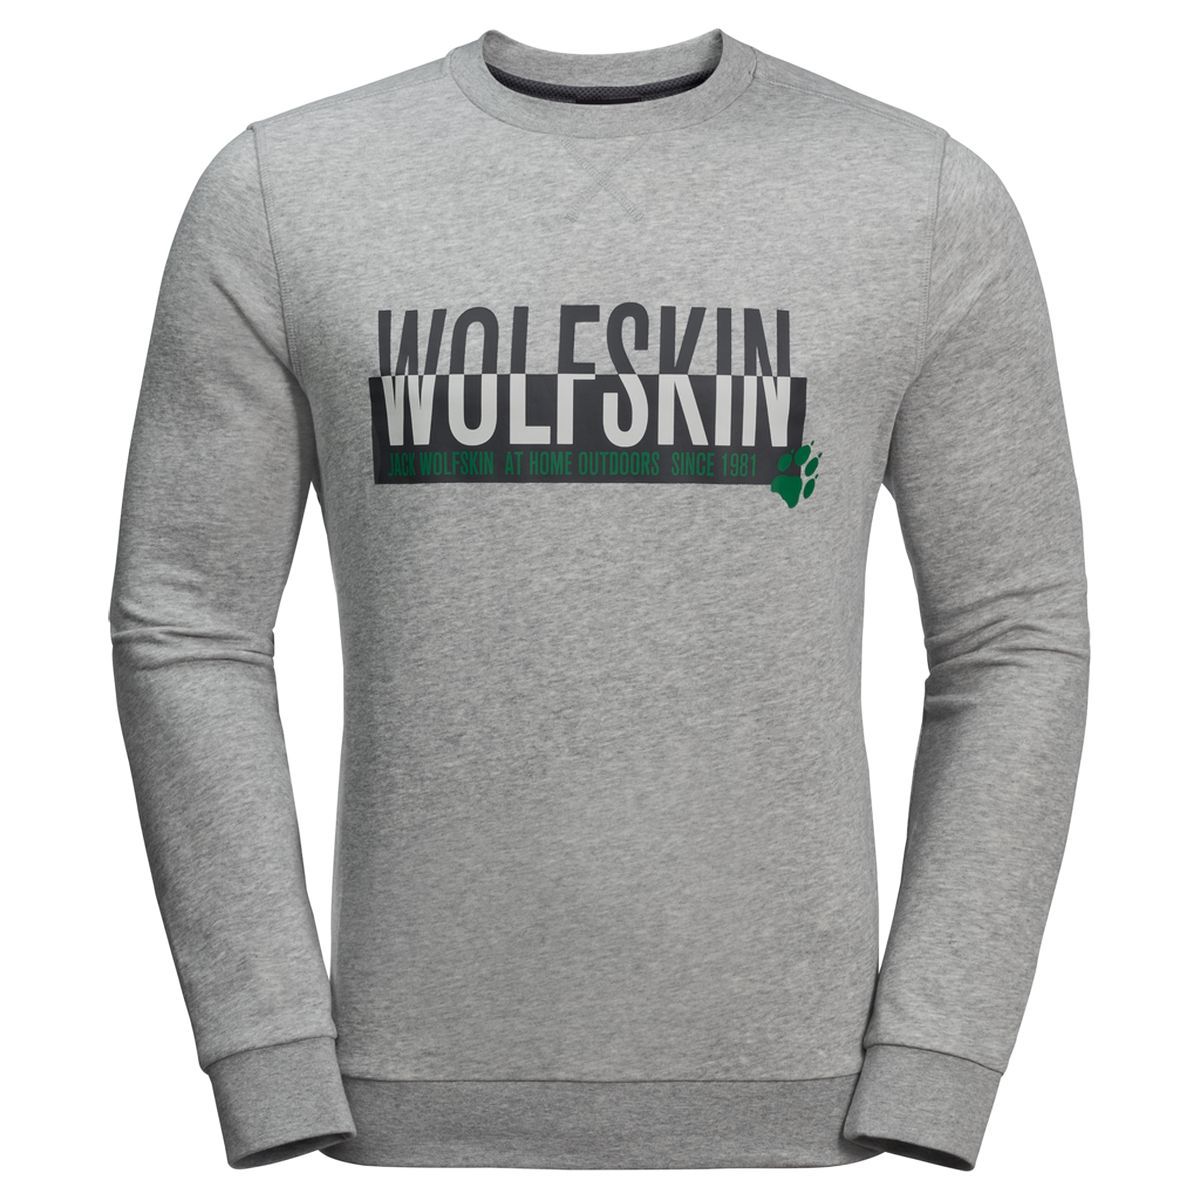   Jack Wolfskin Slogan Sweatshirt M, : -. 1707391-6111.  XXL (54)